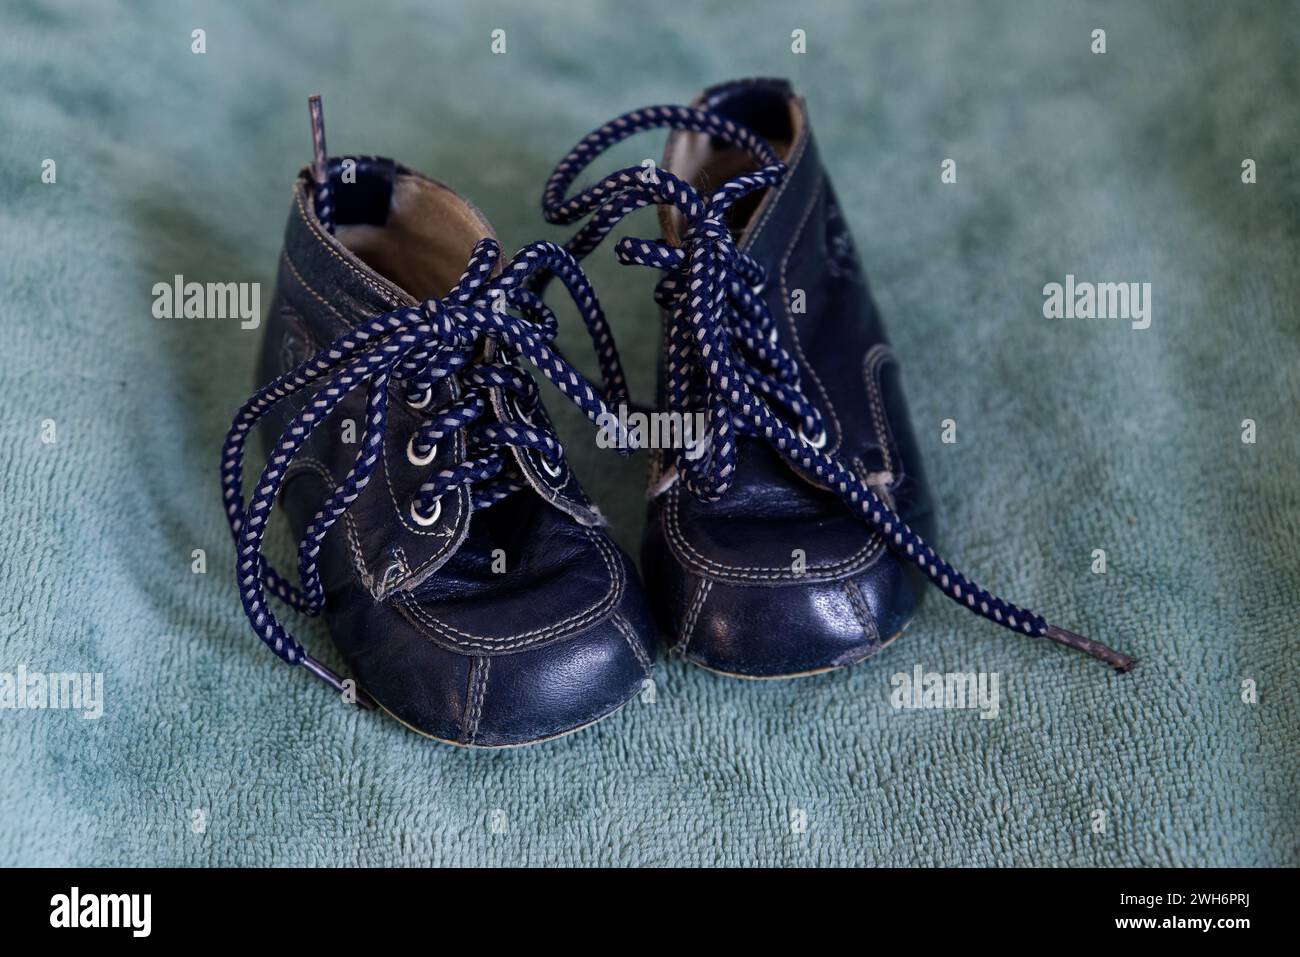 Navy blue vinage baby shoe Stock Photo